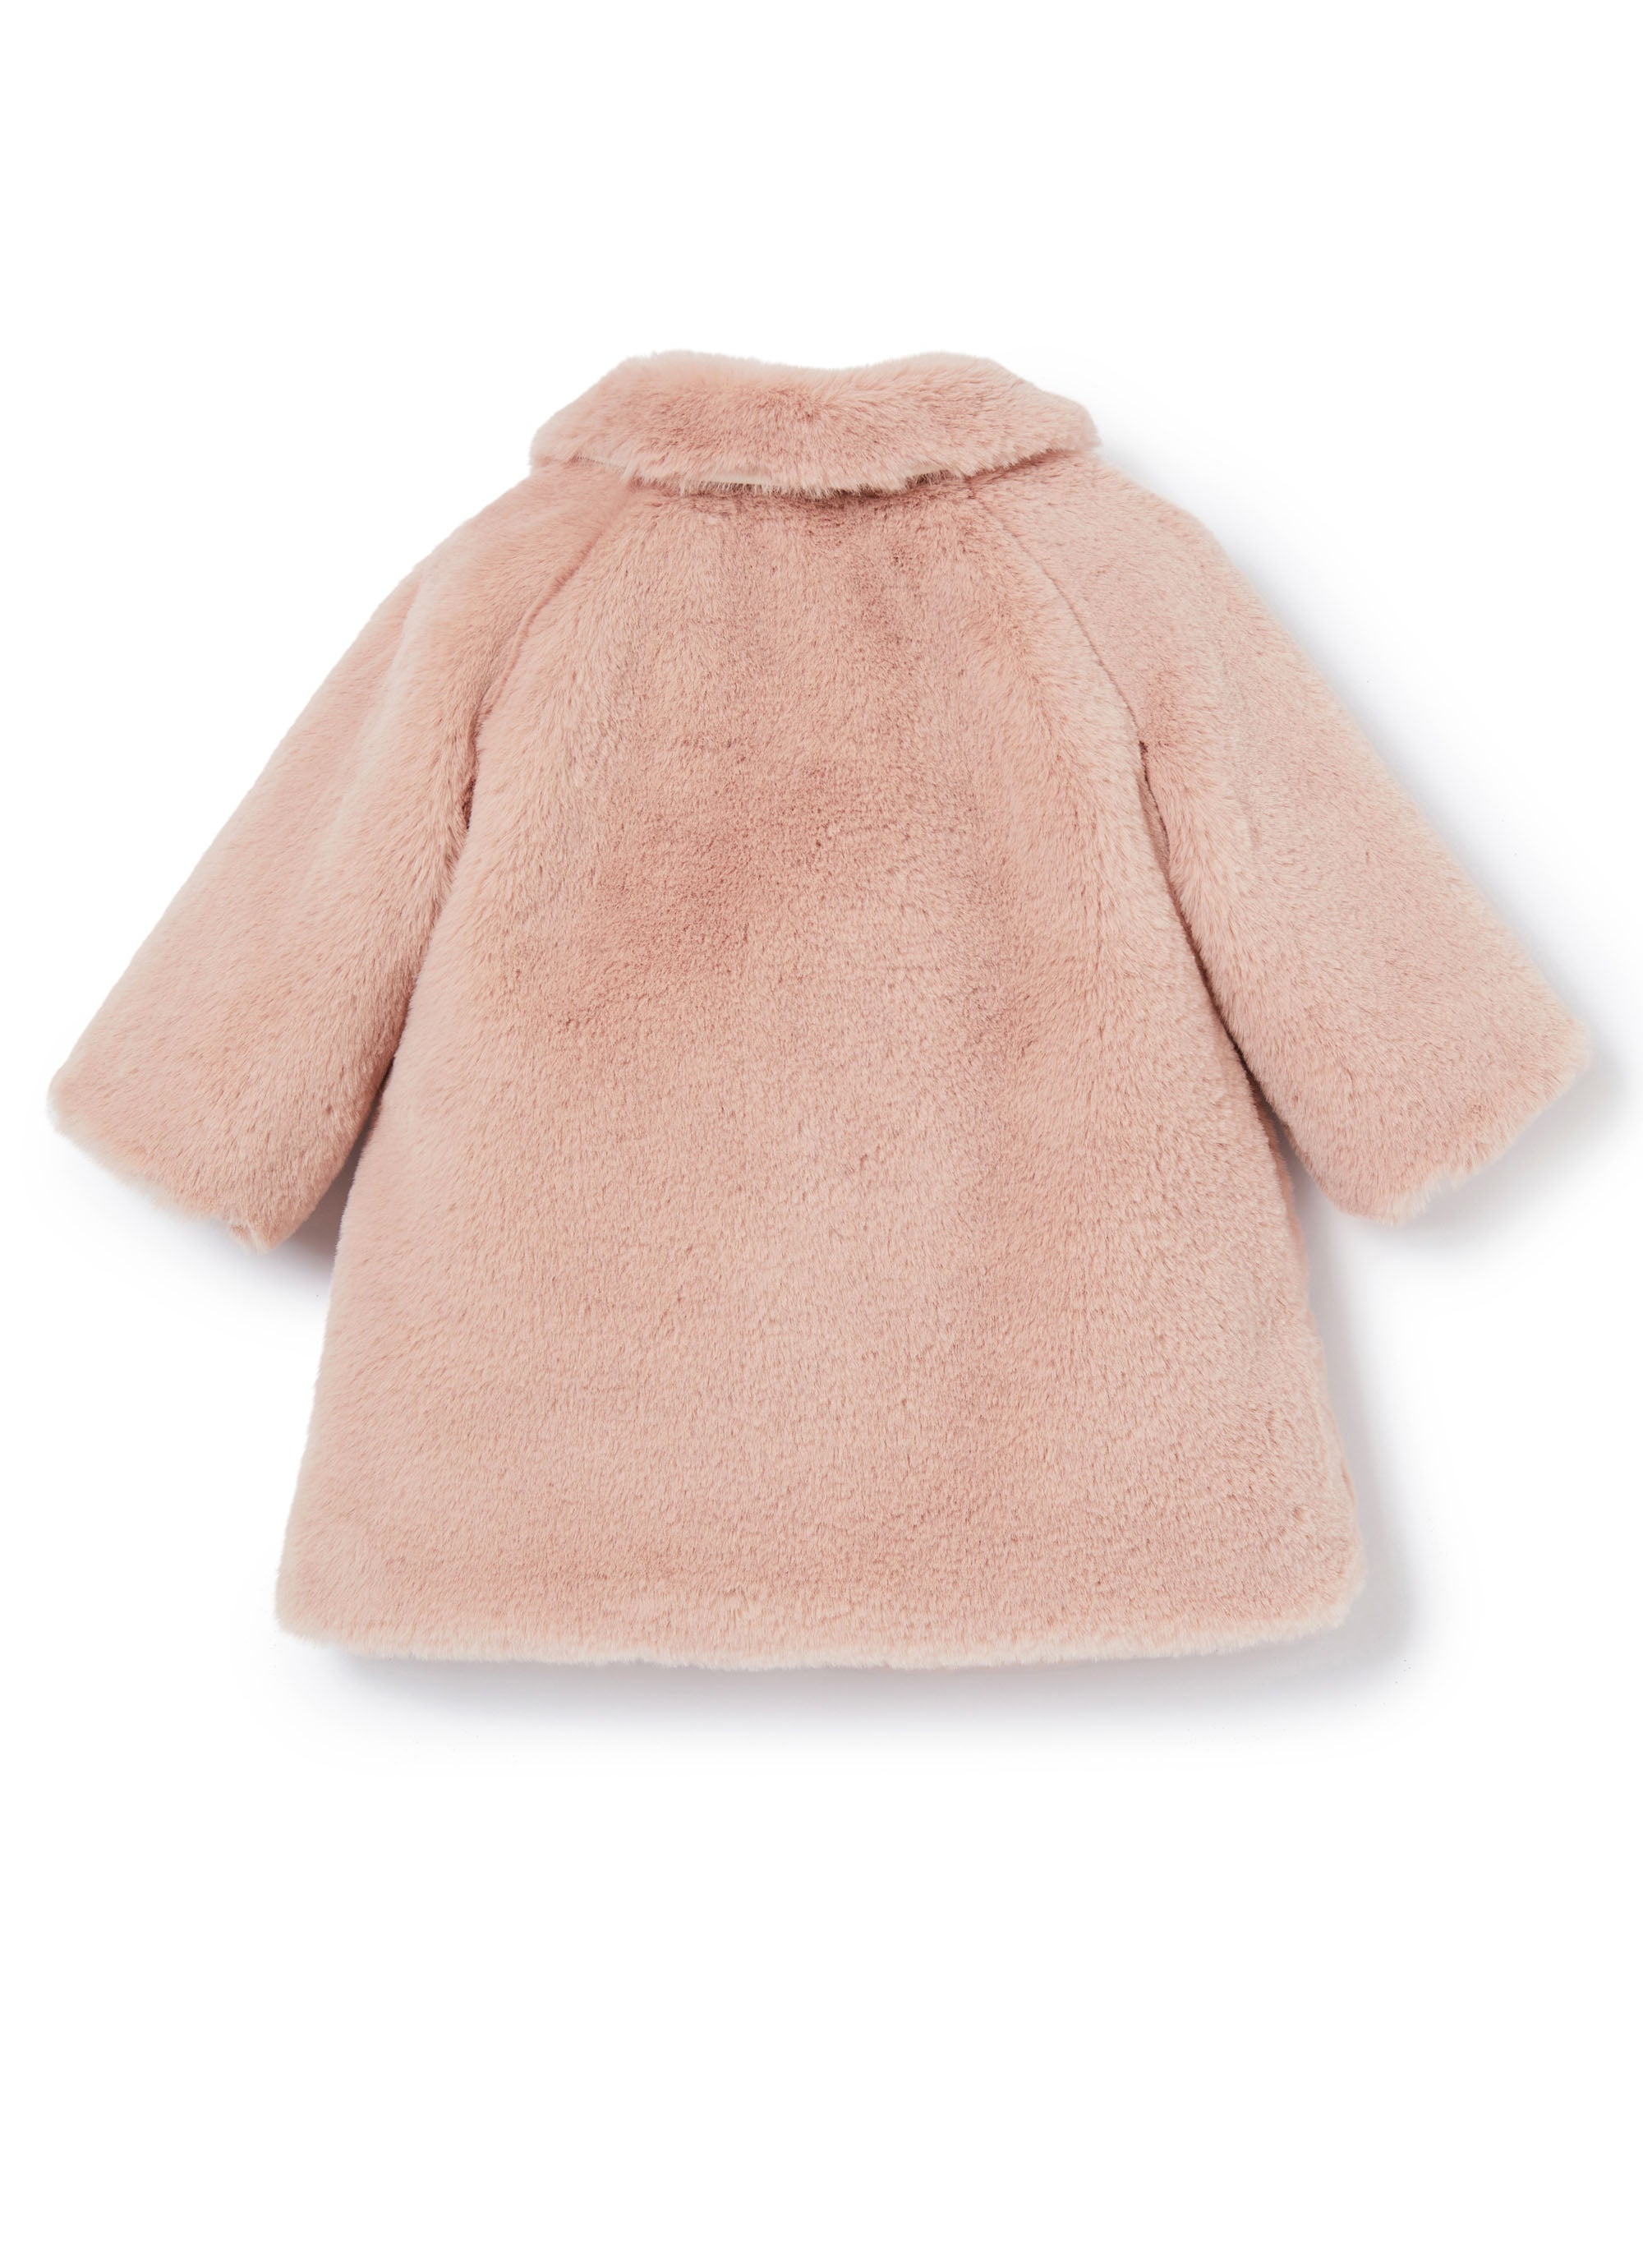 Baby Girls Powder Rose Coat